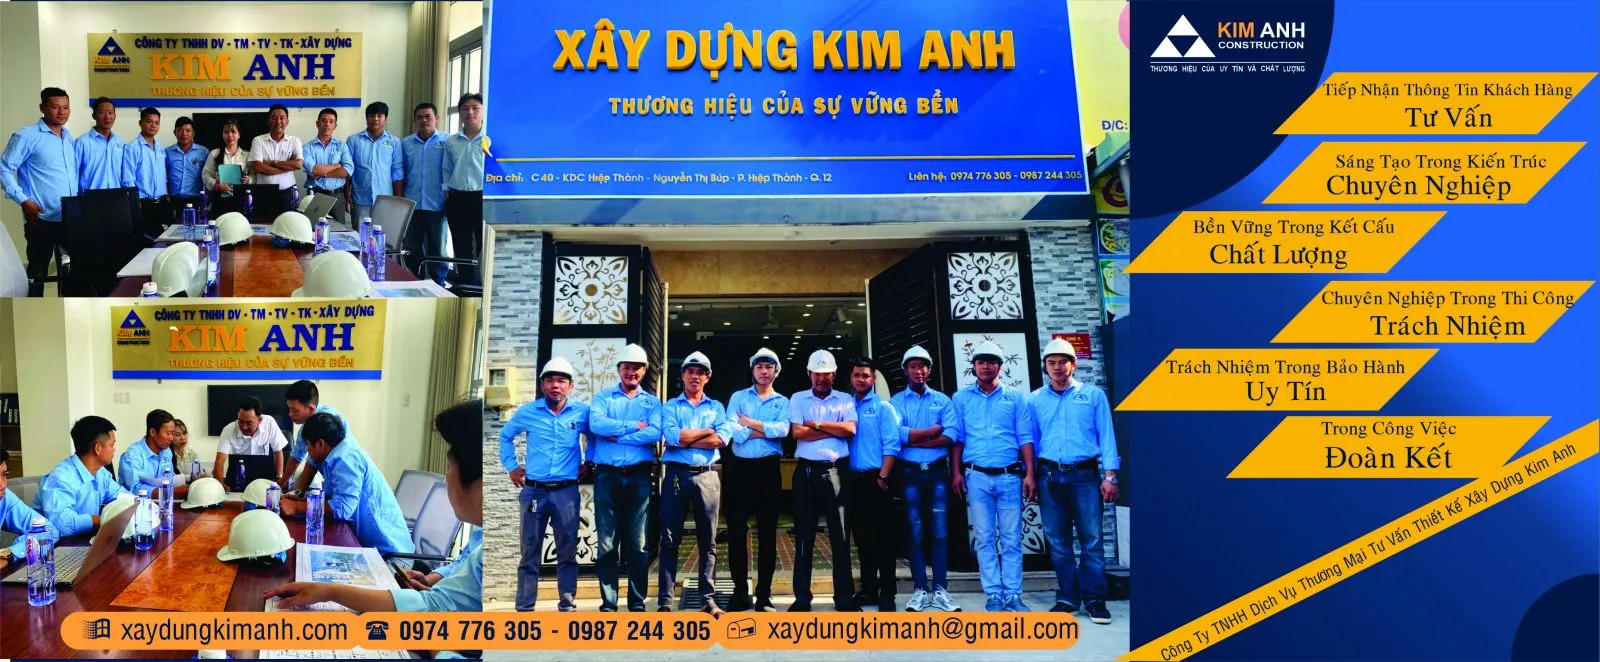 Xây Dựng Kim Anh - Công ty sửa nhà trọn gói Quận Tân Phú